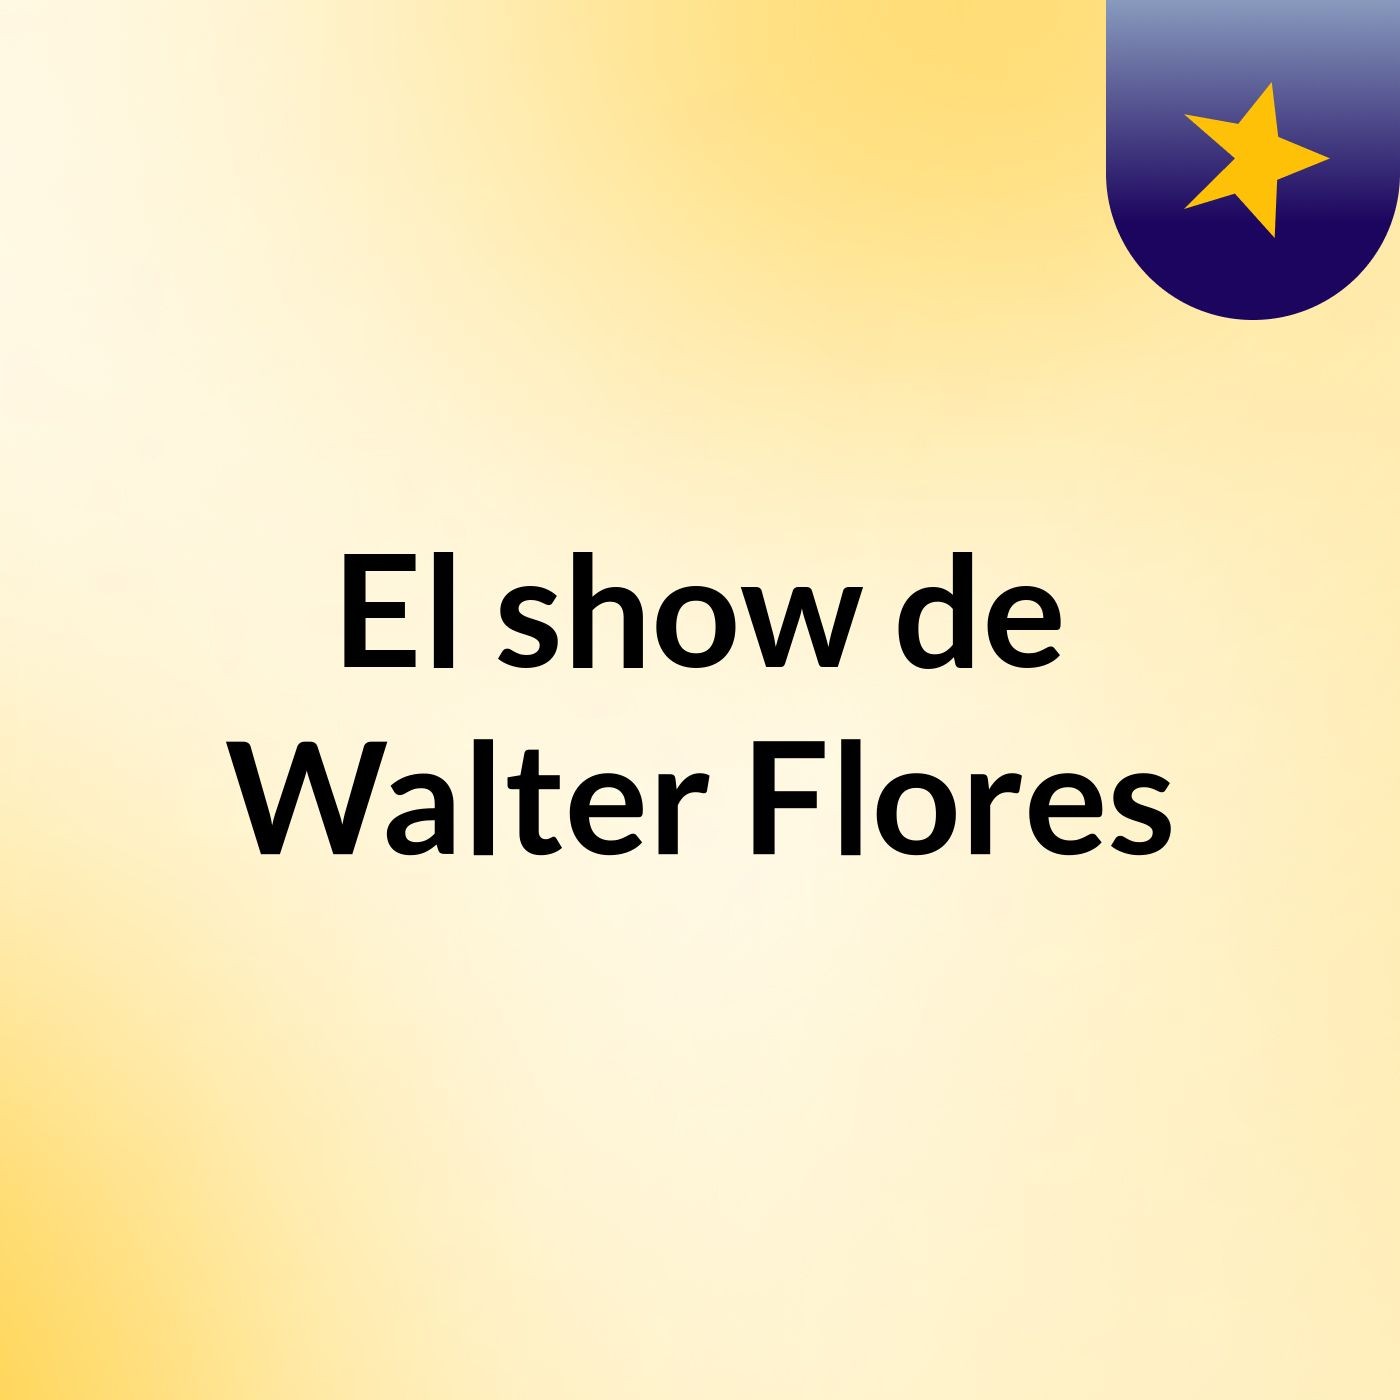 El show de Walter Flores